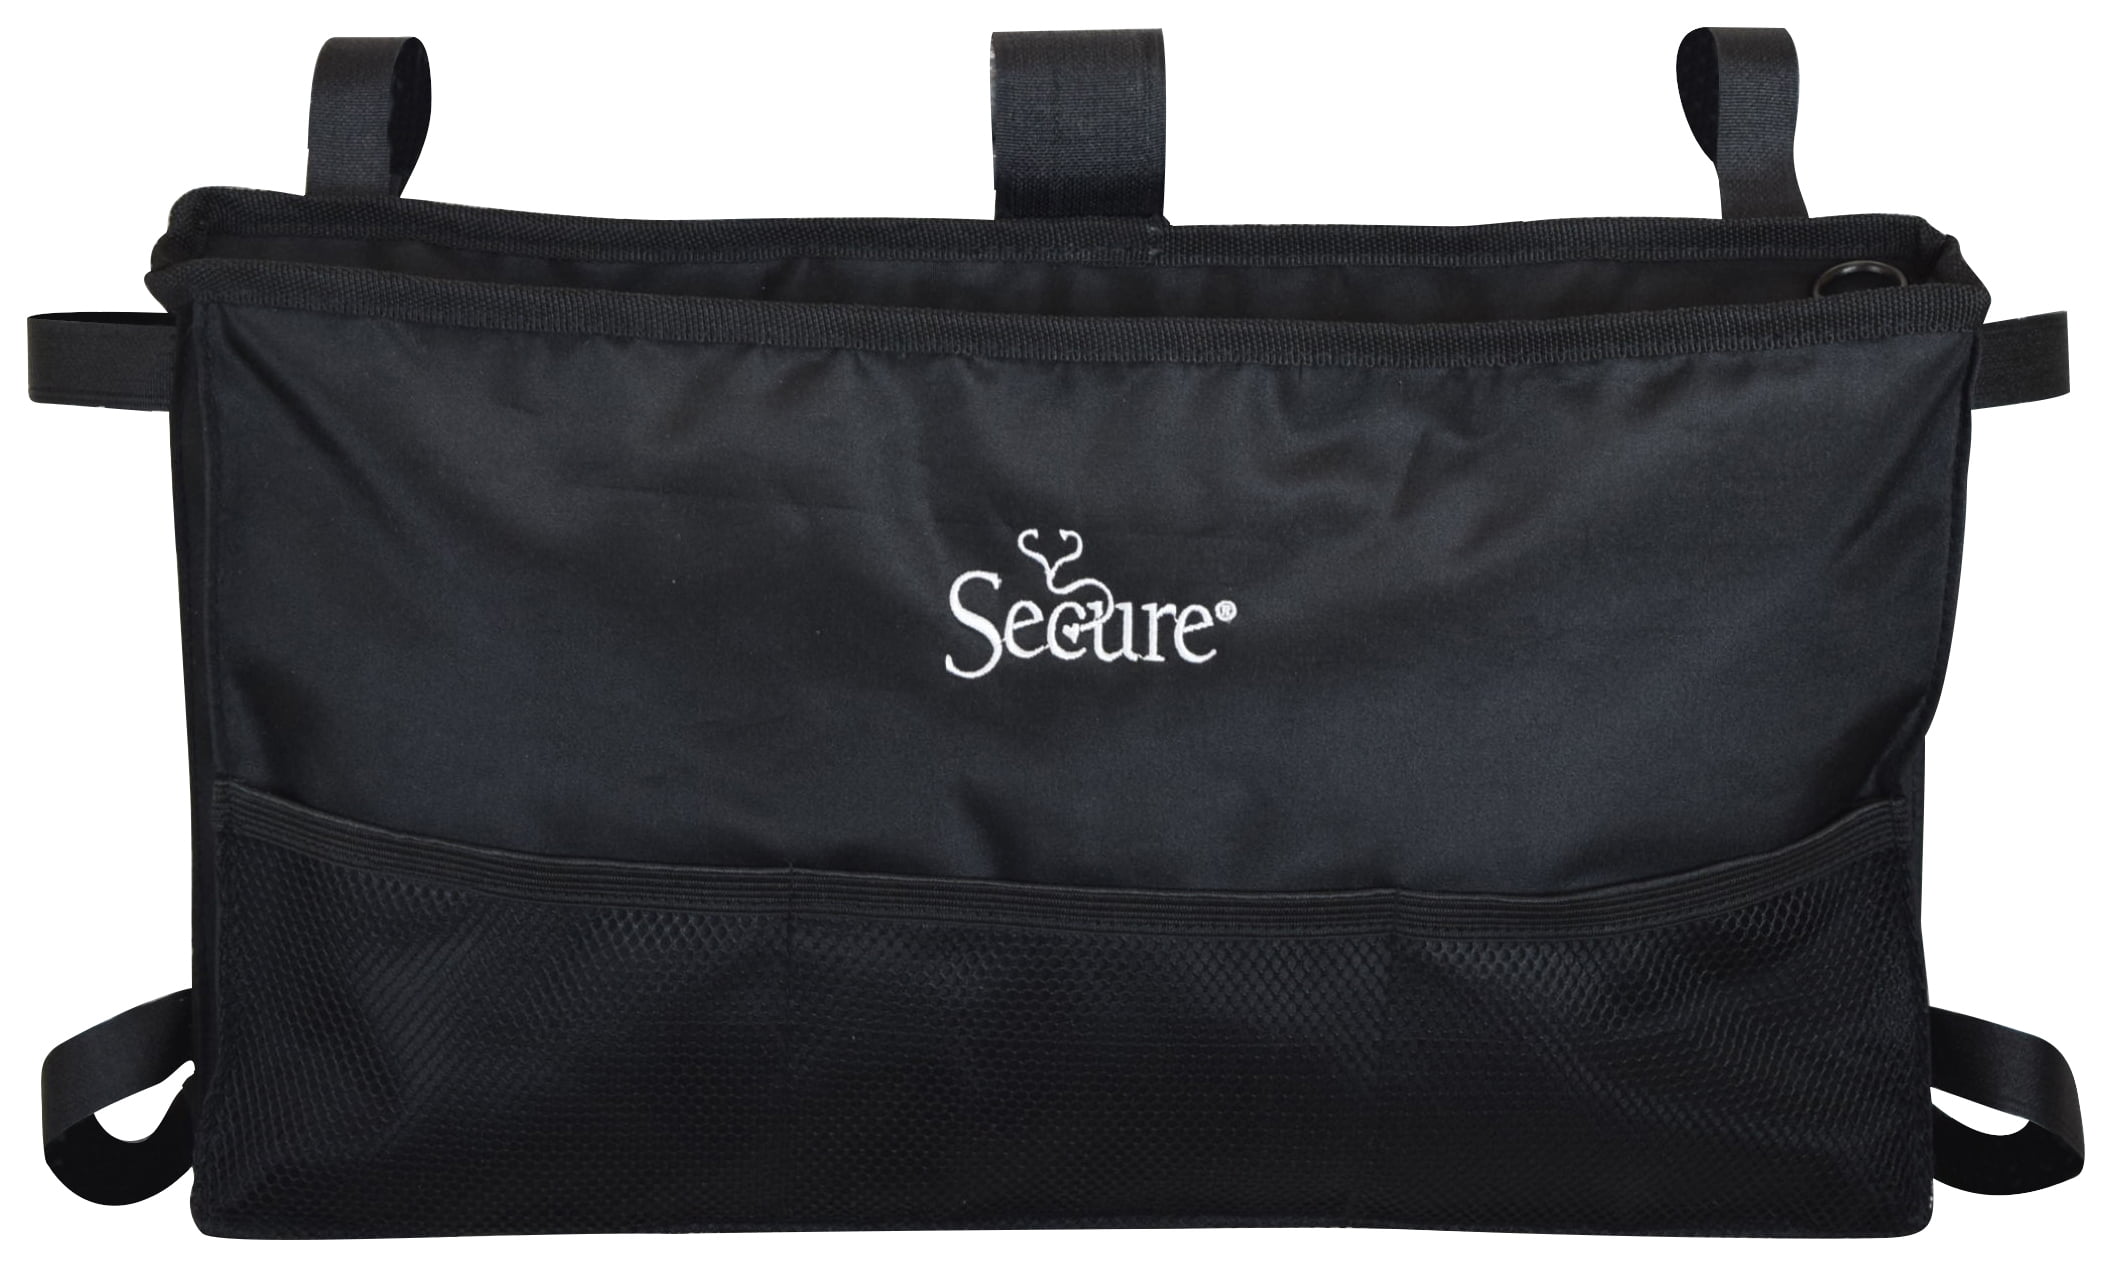 Secure 6-Pocket Walker Bag Storage Pouch, Black - 0 - 0